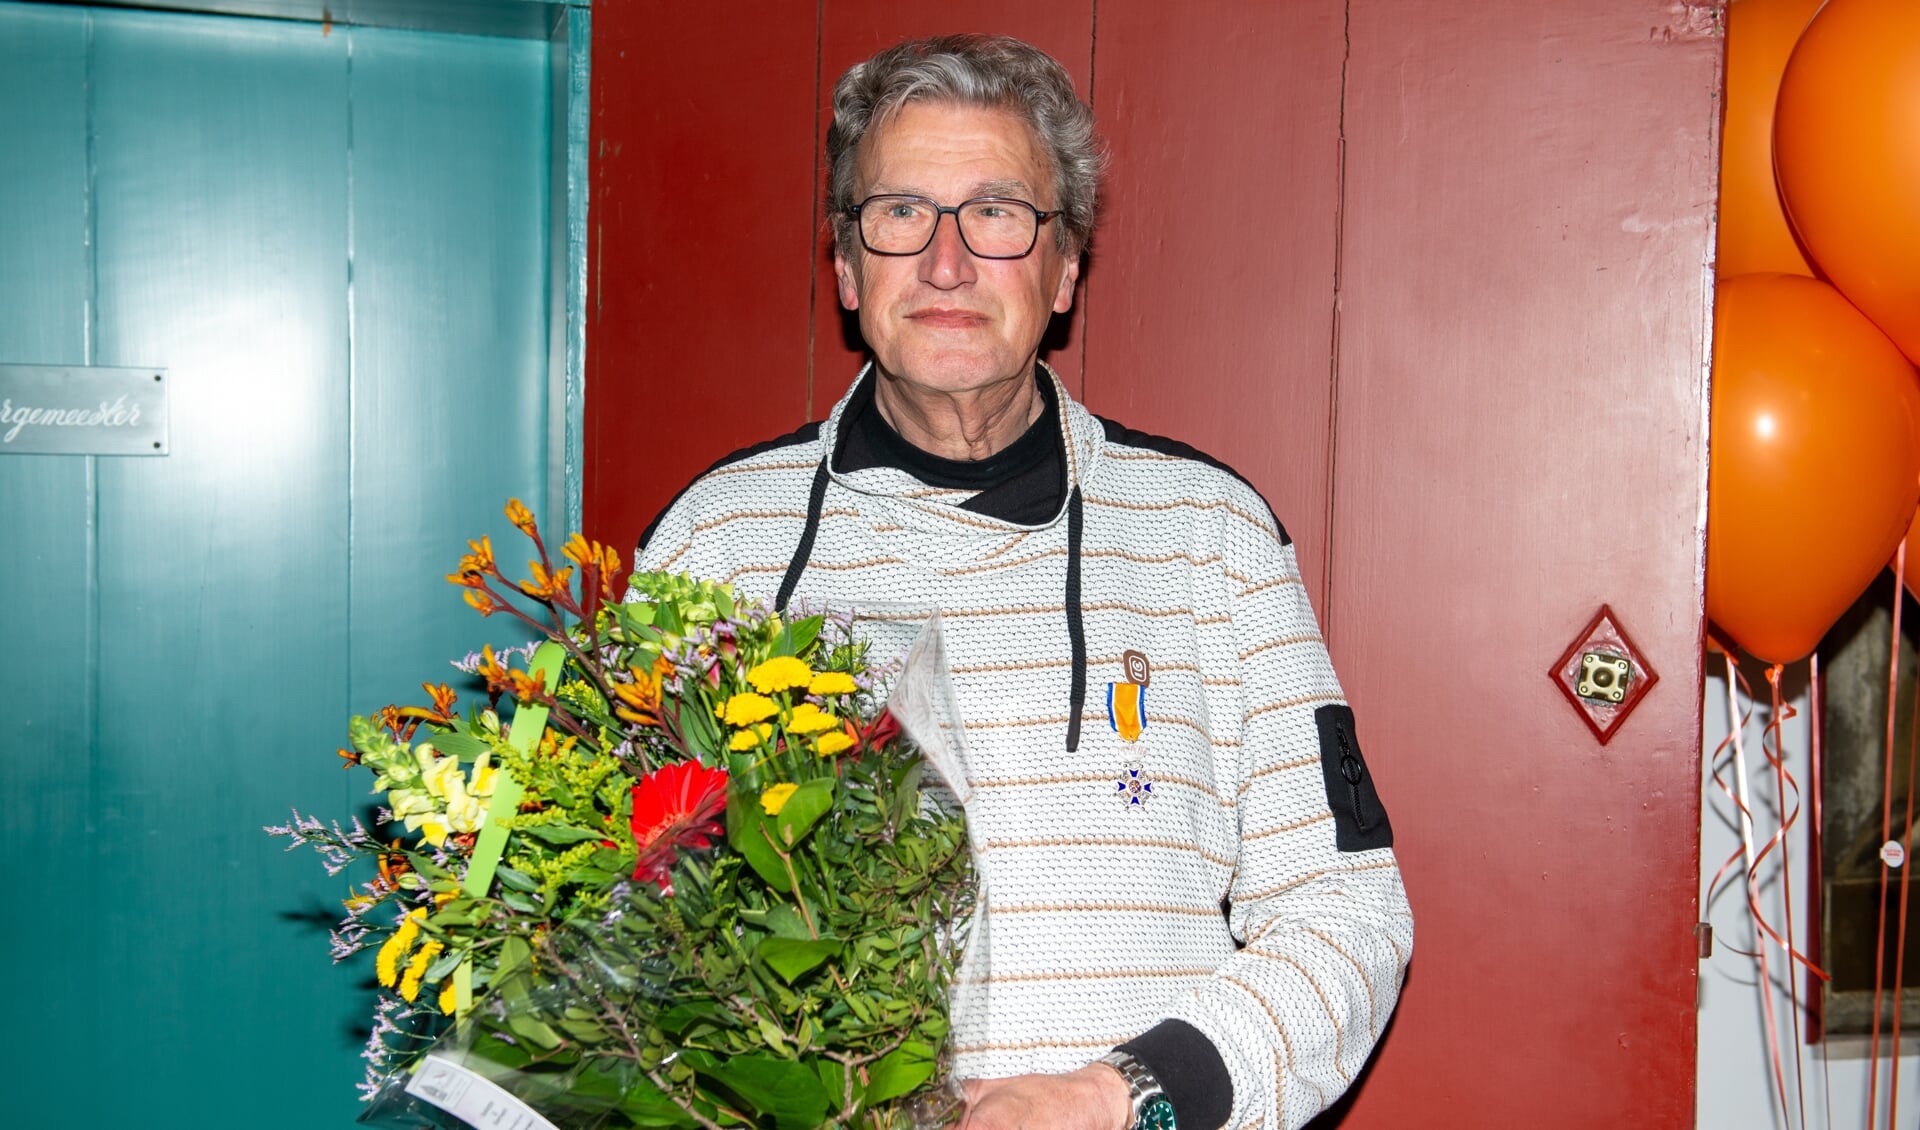 De heer Jan Pieter Reinstra heeft een koninklijke onderscheiding gekregen.